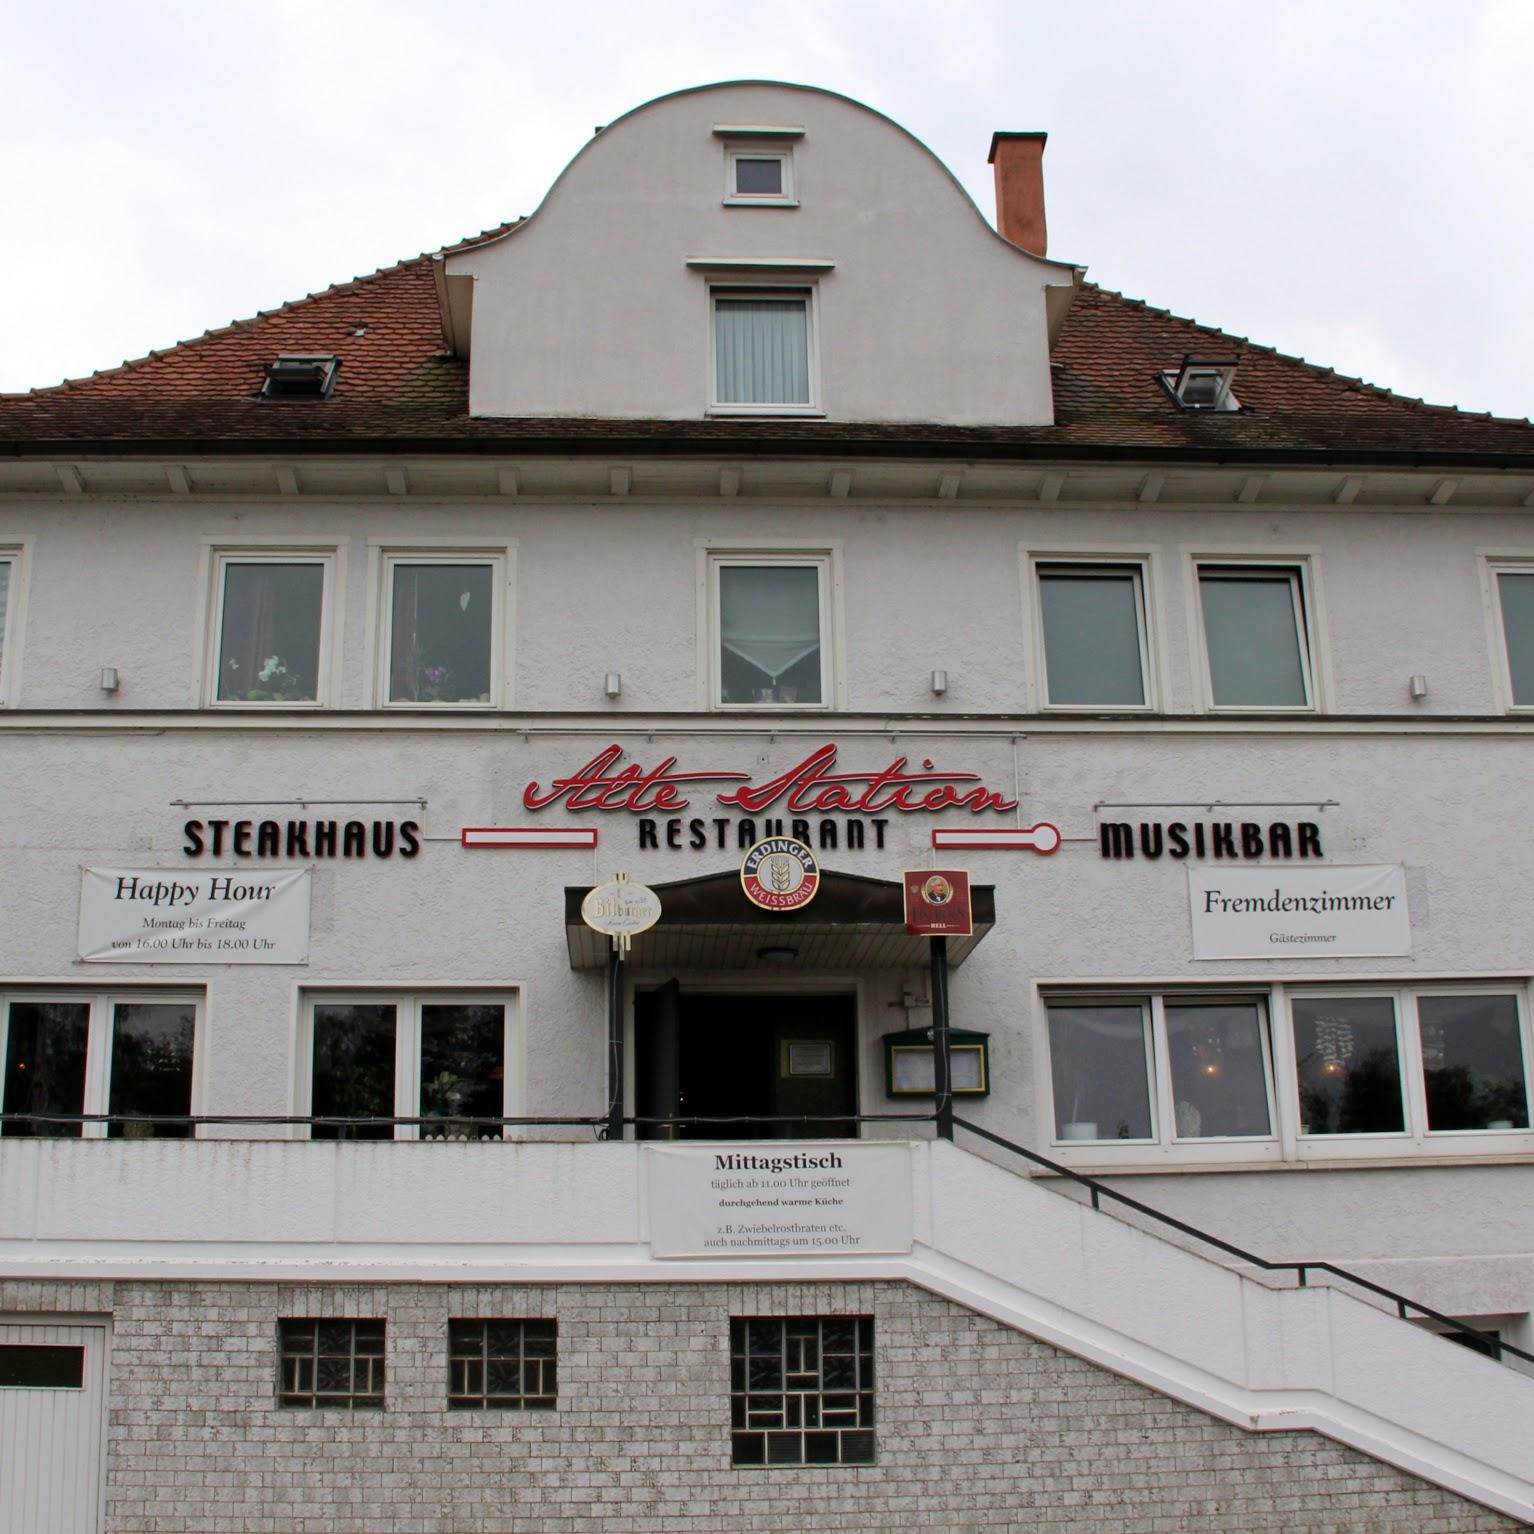 Restaurant "Restaurant-Pizzeria Alte Station" in  Rechberghausen